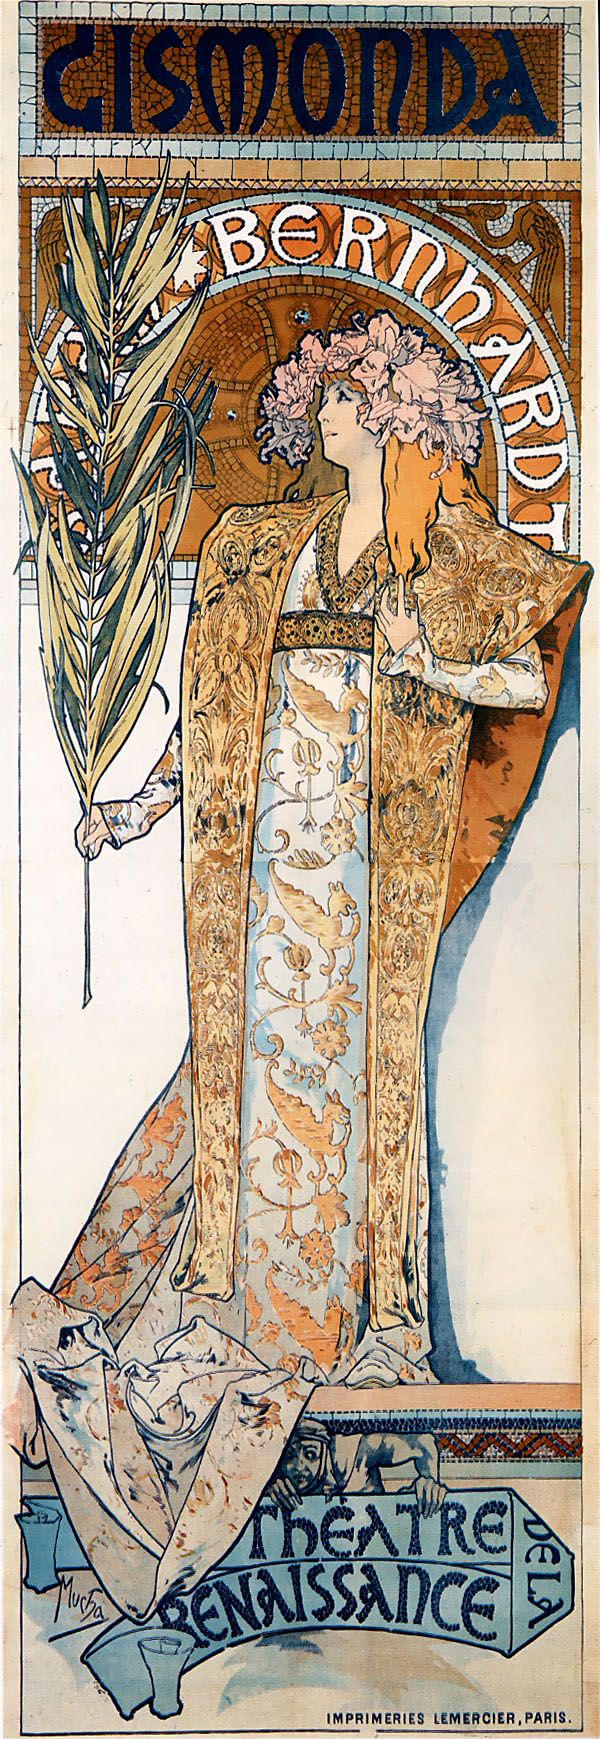 Alfons Mucha 1860 – 1939, Gismonda 1894.
Victorien Sardou's Poster for 'Gismonda',
played by Sarah Bernhardt at the
'Théâtre de la Renaissance' in Paris.
Lithograph 216 x 74 cm. 
Grendelkhan 2010 commons.wikimedia